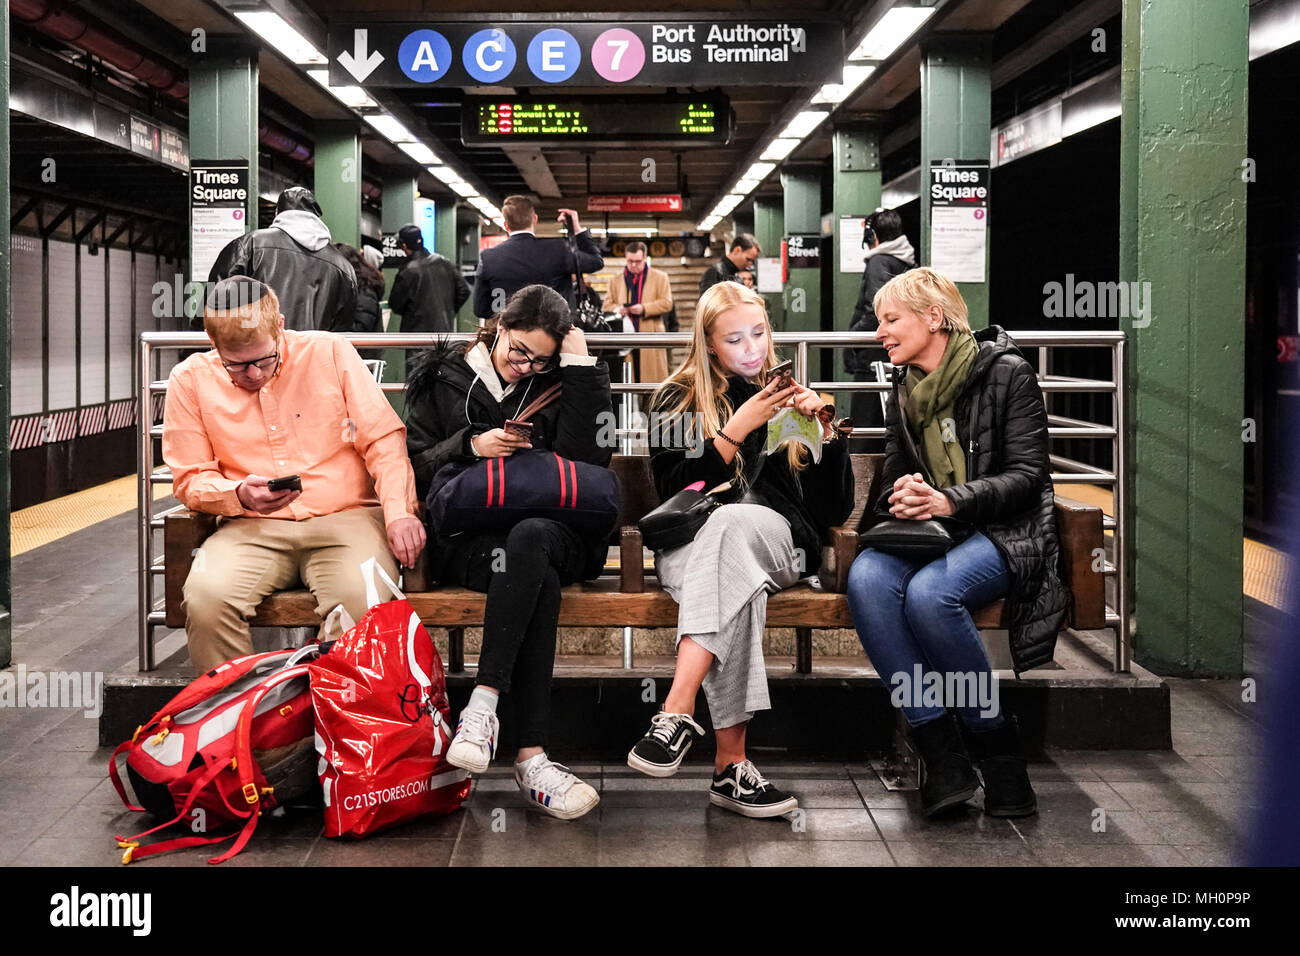 Eine Gruppe der Pendler auf einer Bank in der New Yorker U-Bahn. Aus einer Reihe von Fotos in den Vereinigten Staaten. Foto Datum: Donnerstag, 5. April 2018. Stockfoto